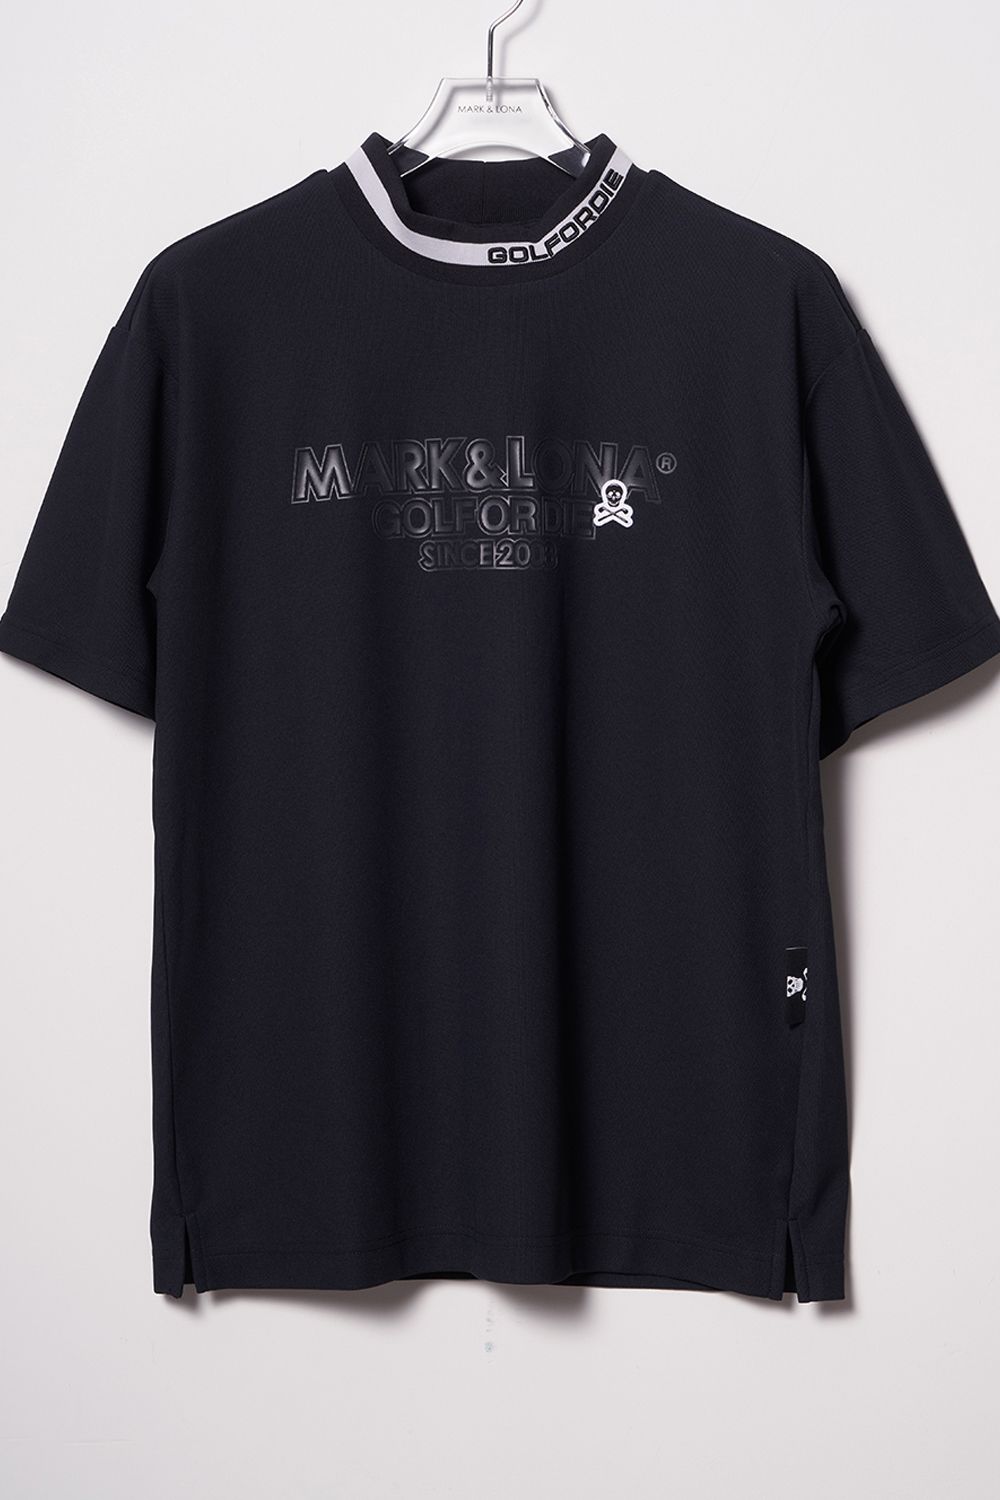 MOCK NECK SHIRTS / フロントロゴ アイアンスカルワッペン ドライタッチ モックネックシャツ (ブラック) - 44(S)